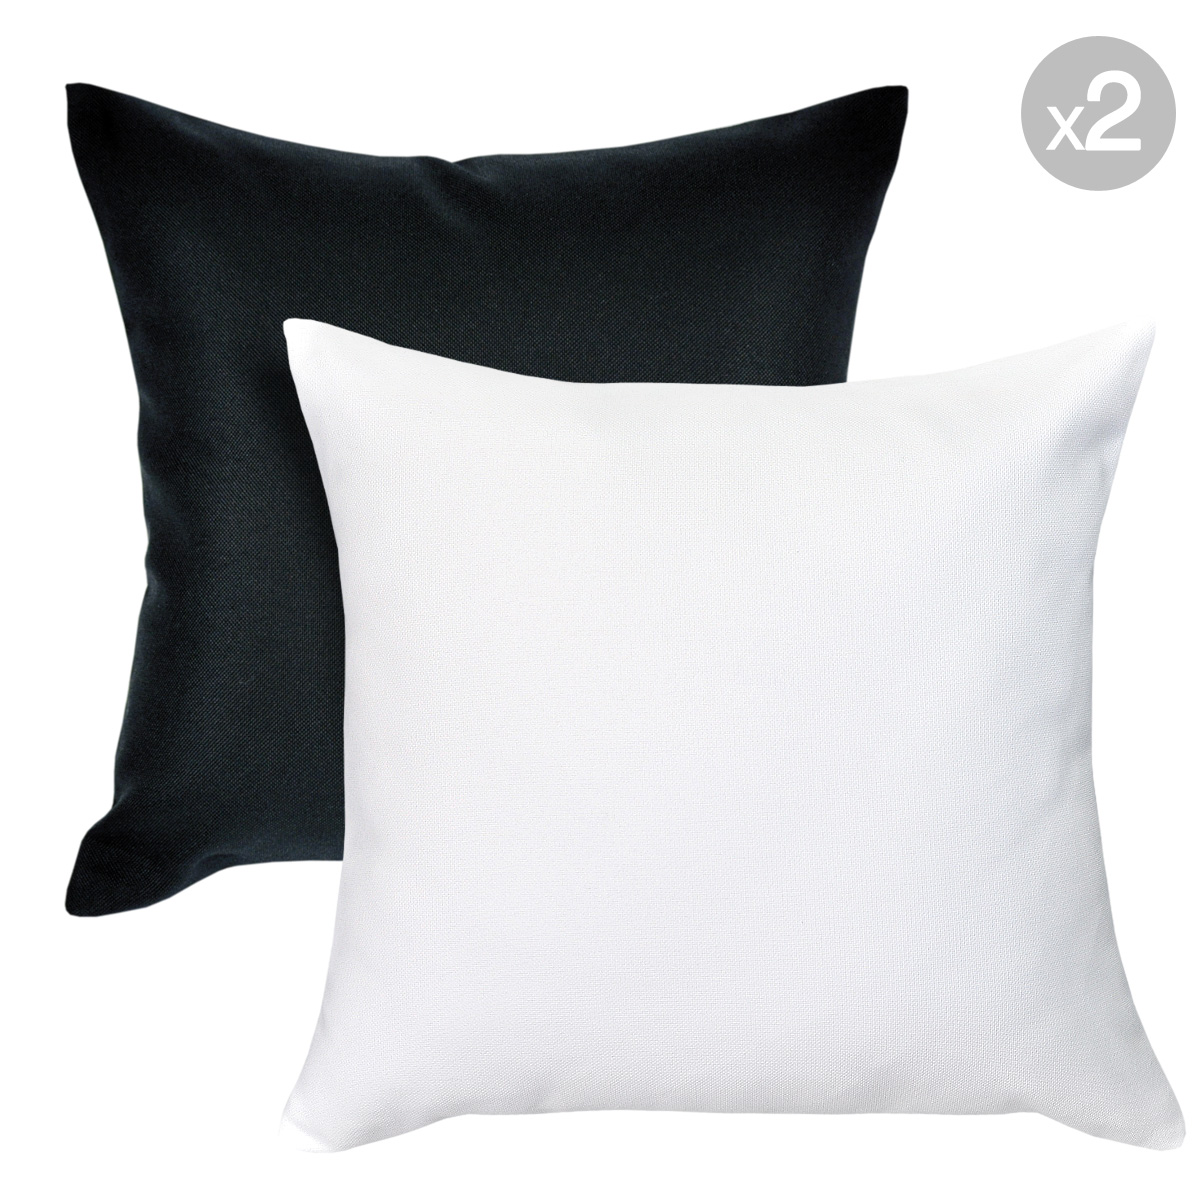 Kona Ash + Kona Cloud Outdoor Cushions - 45x45cm